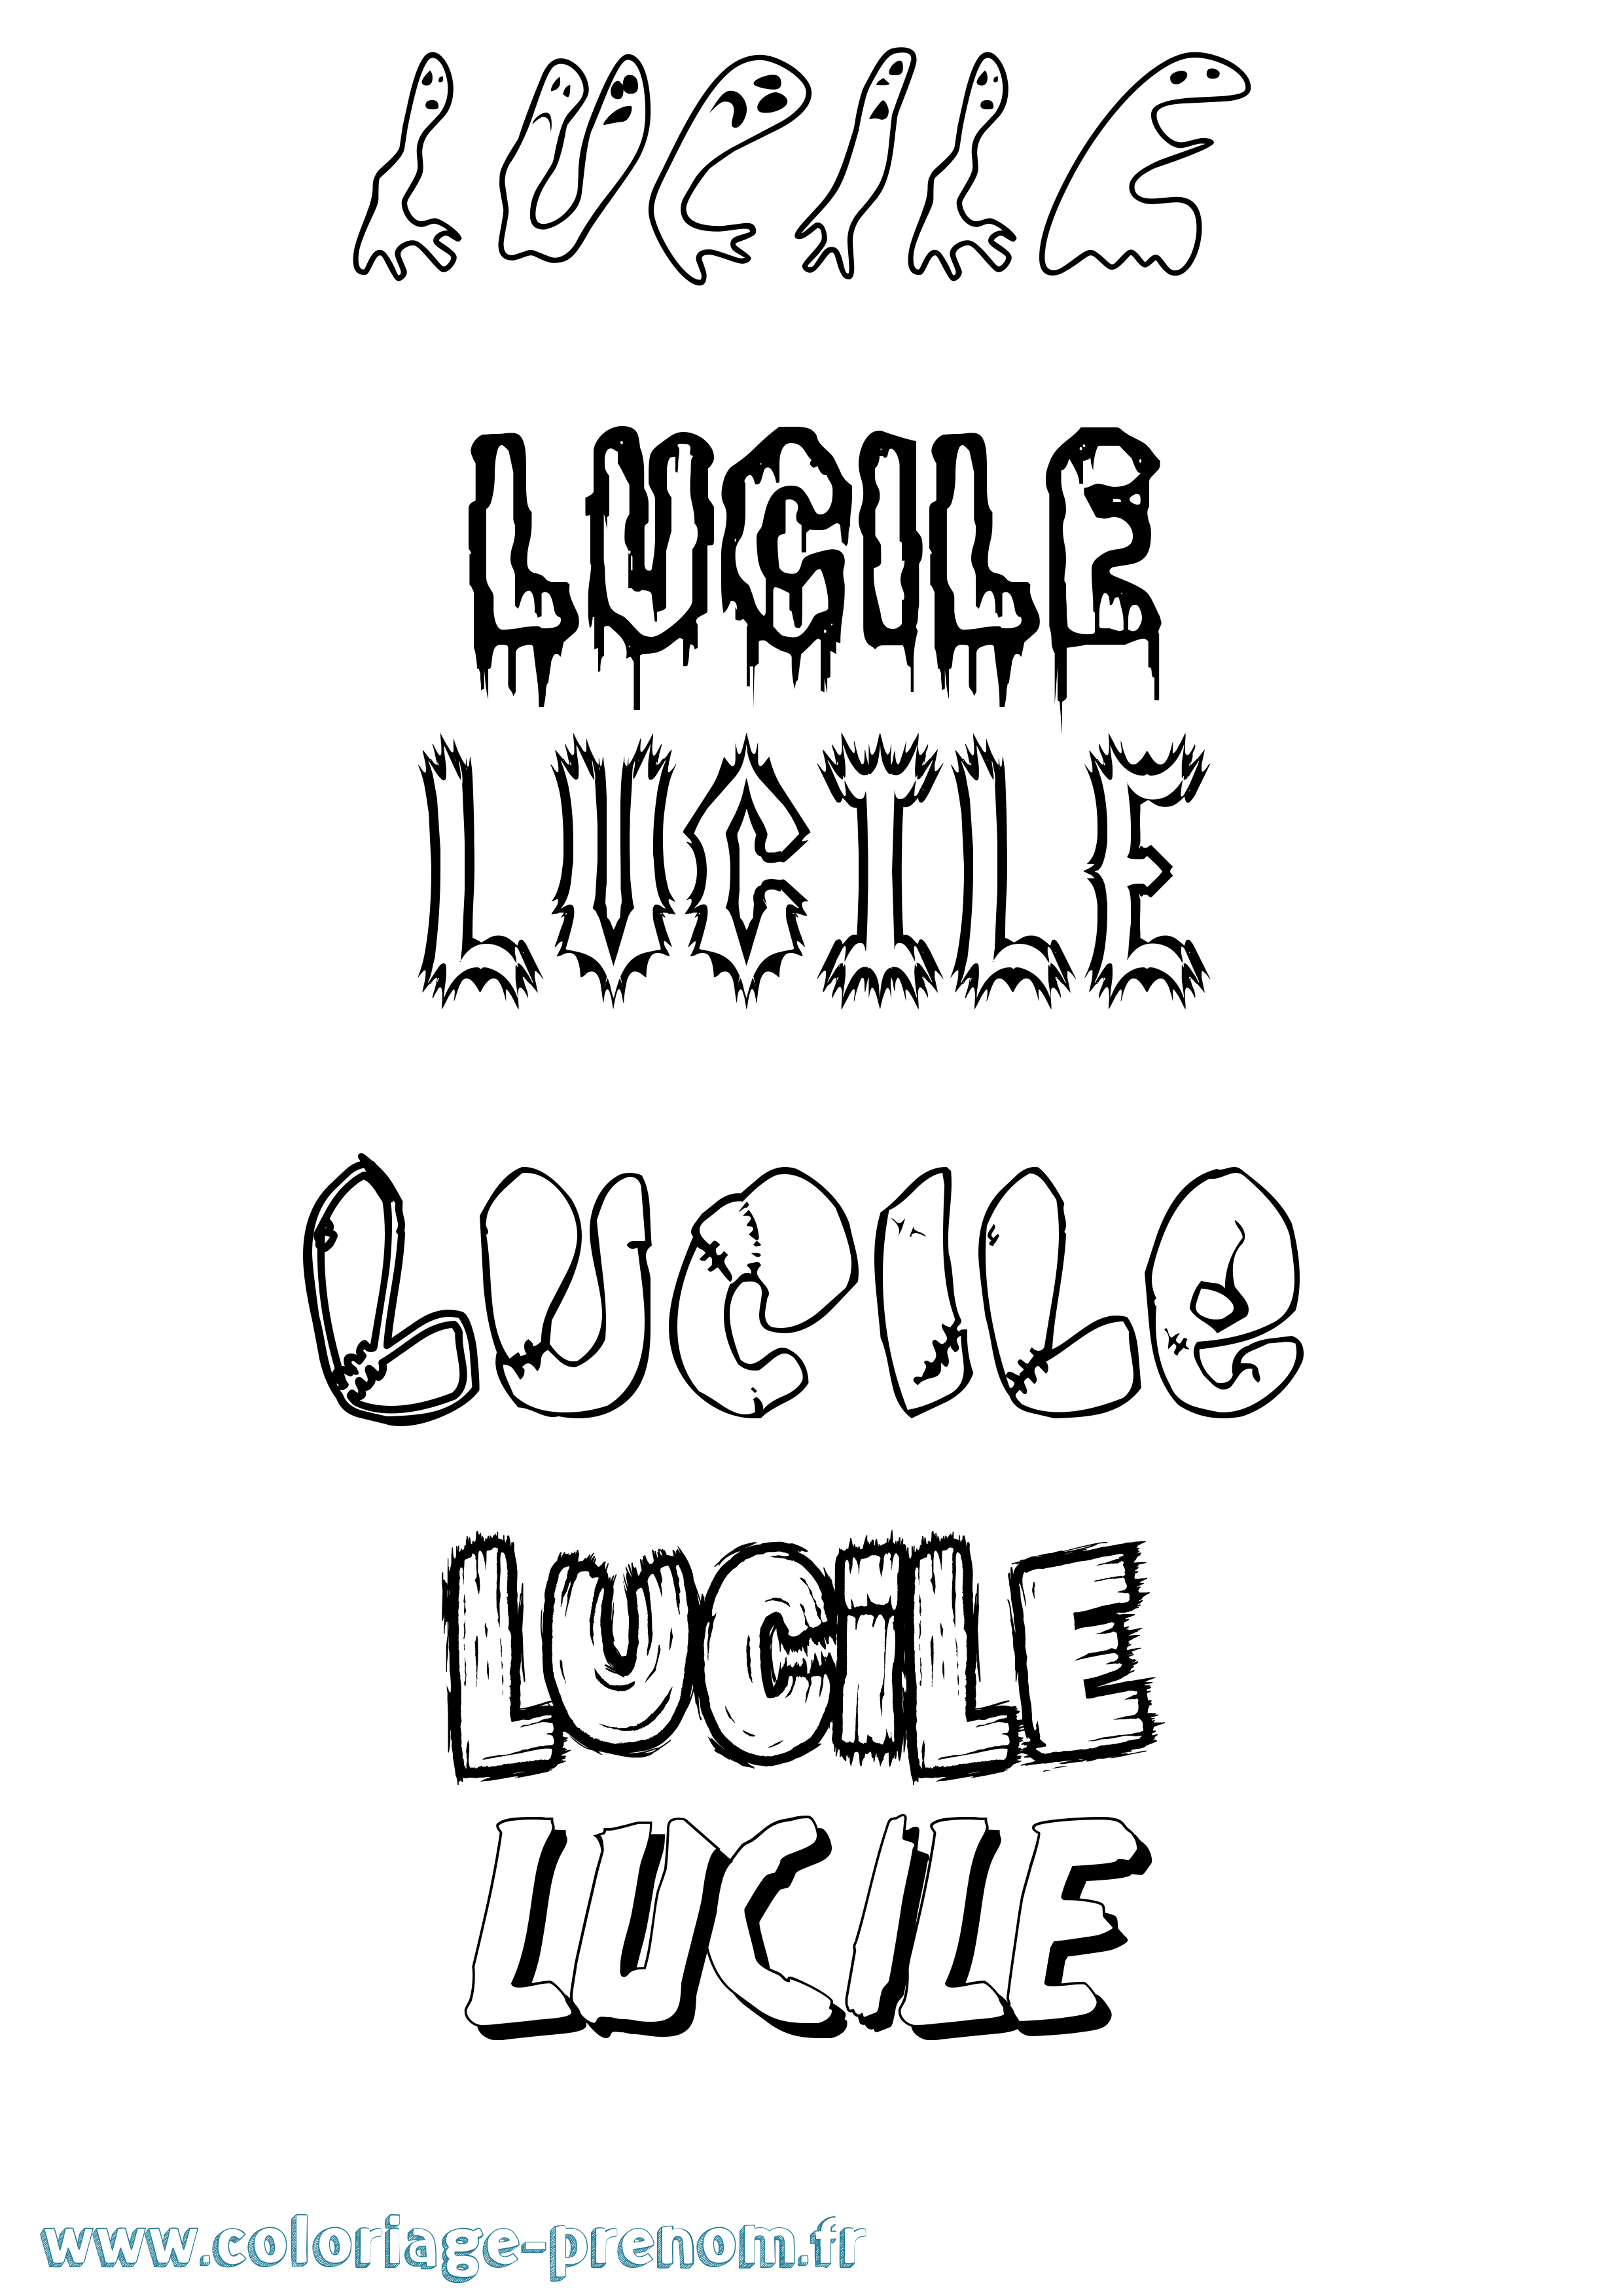 Coloriage prénom Lucile Frisson